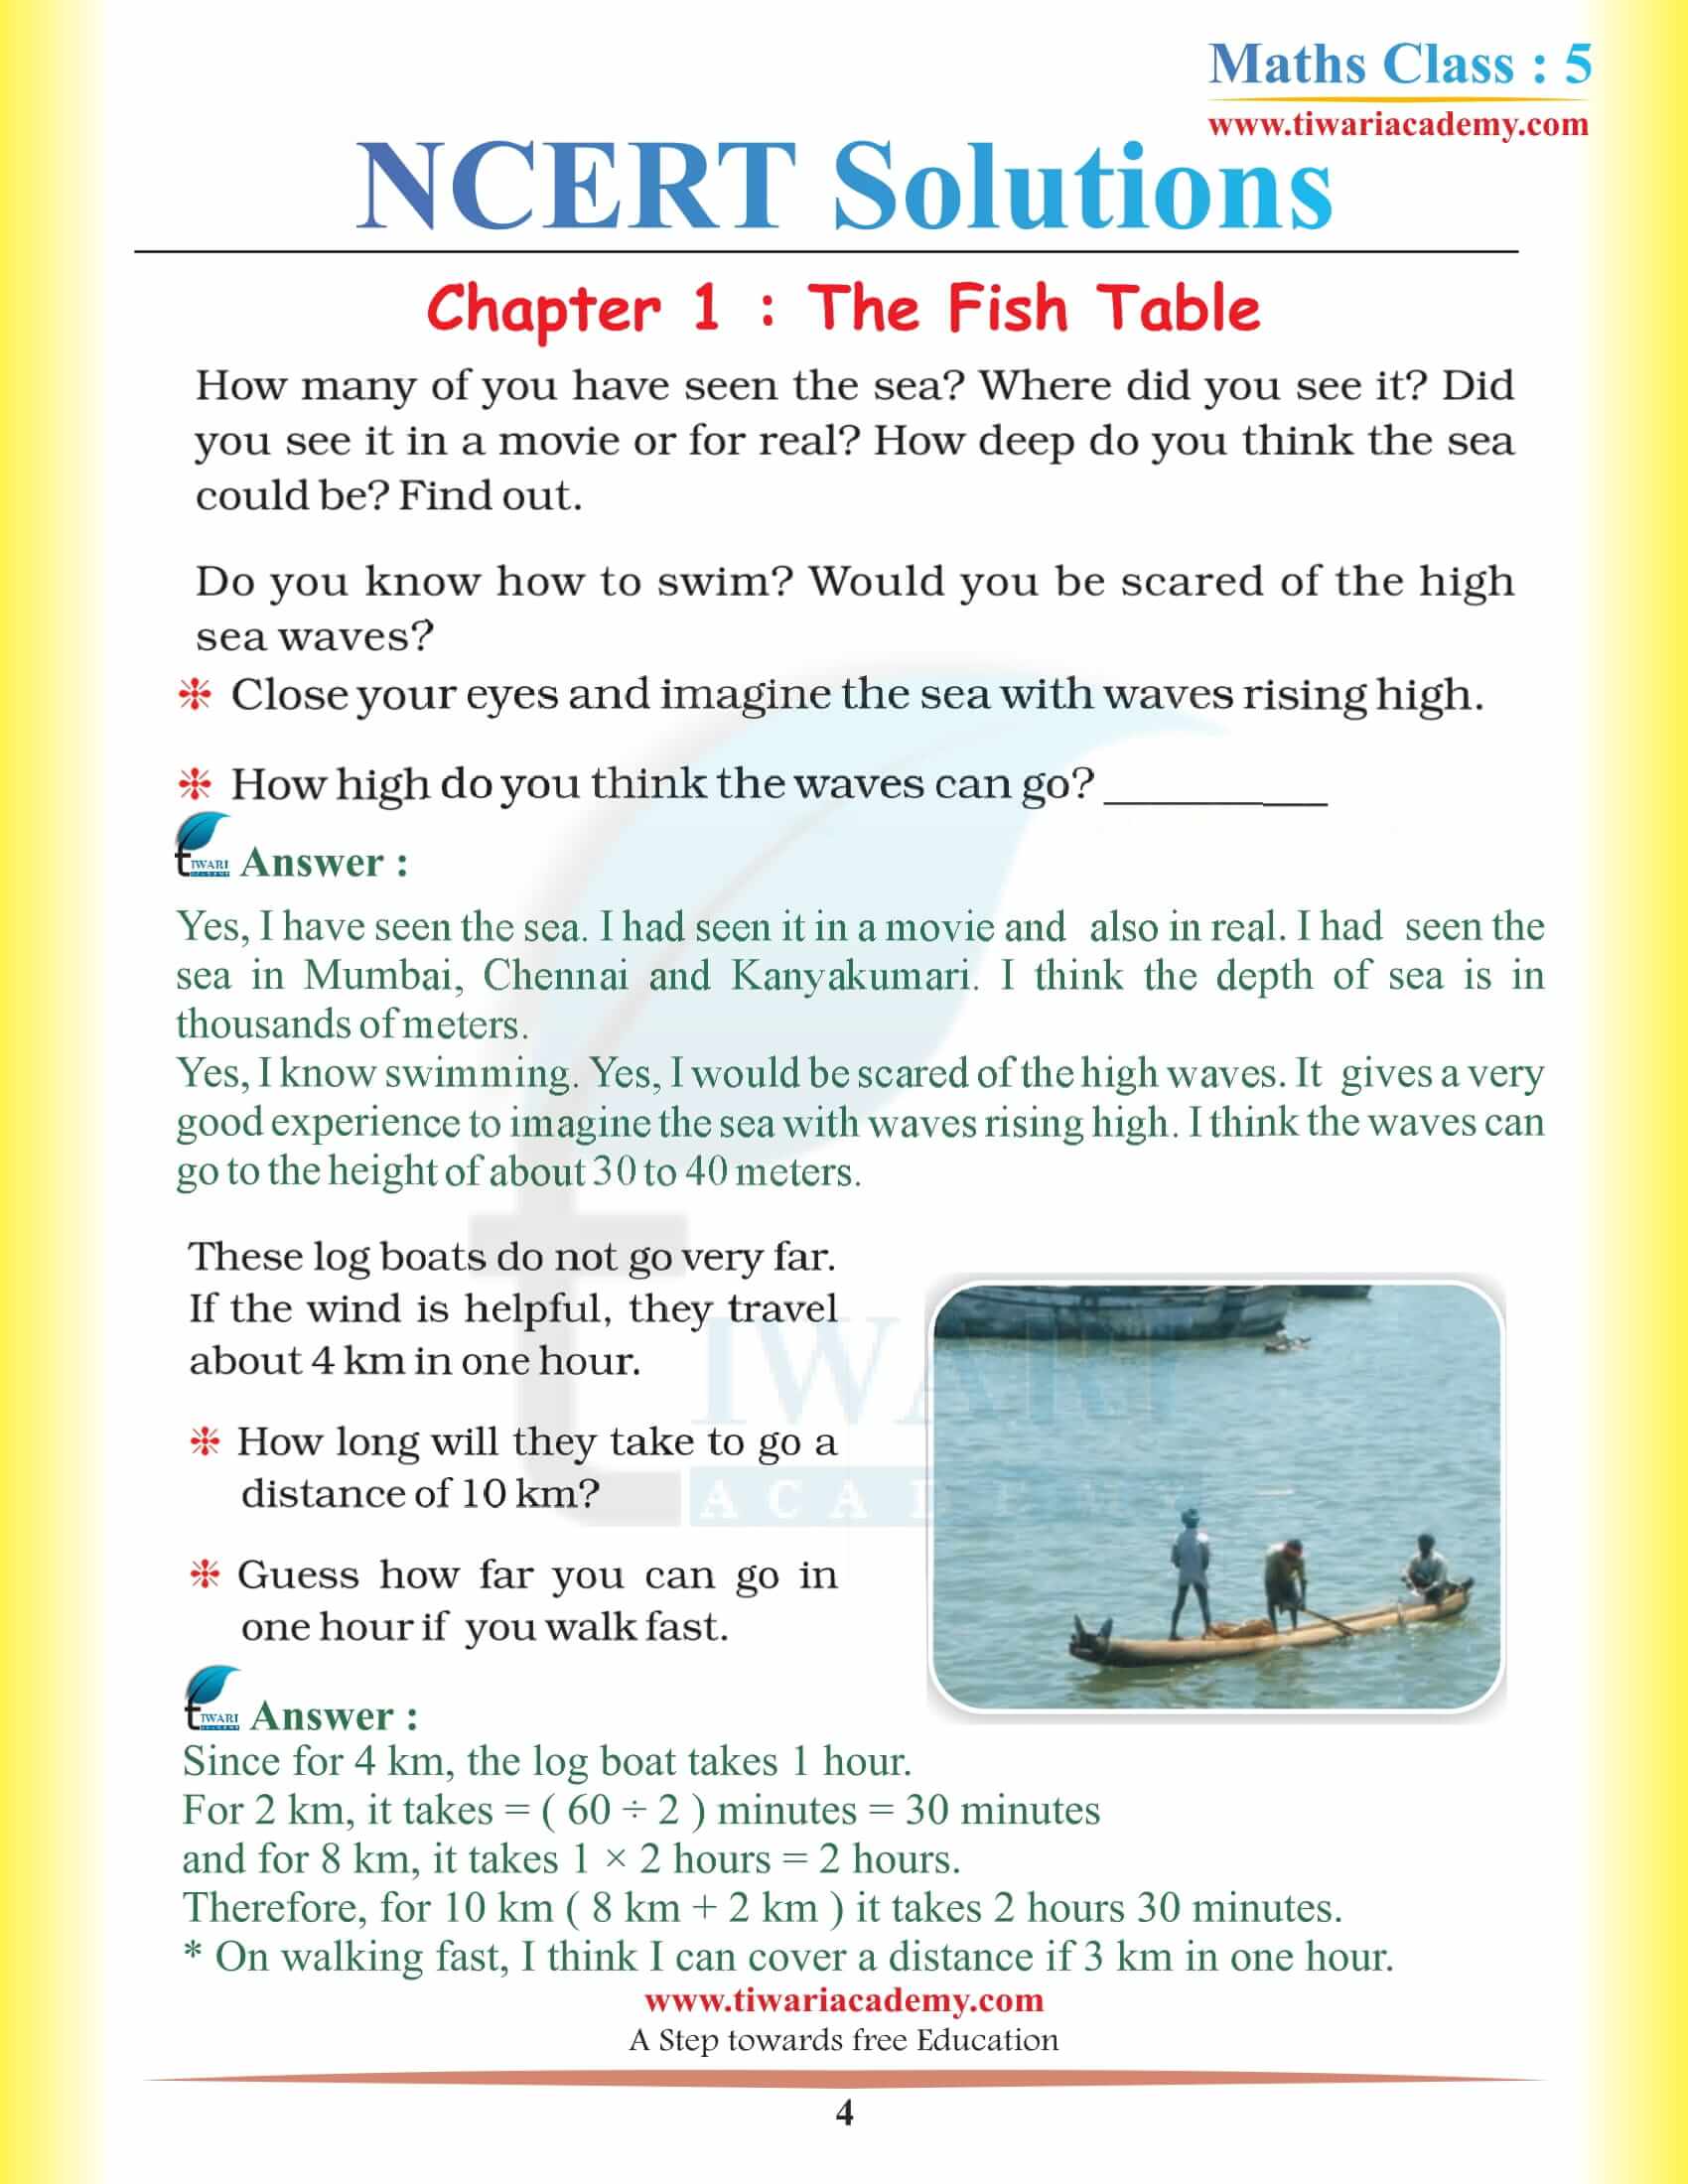 NCERT Solutions for Class 5 Maths Chapter 1 English Medium